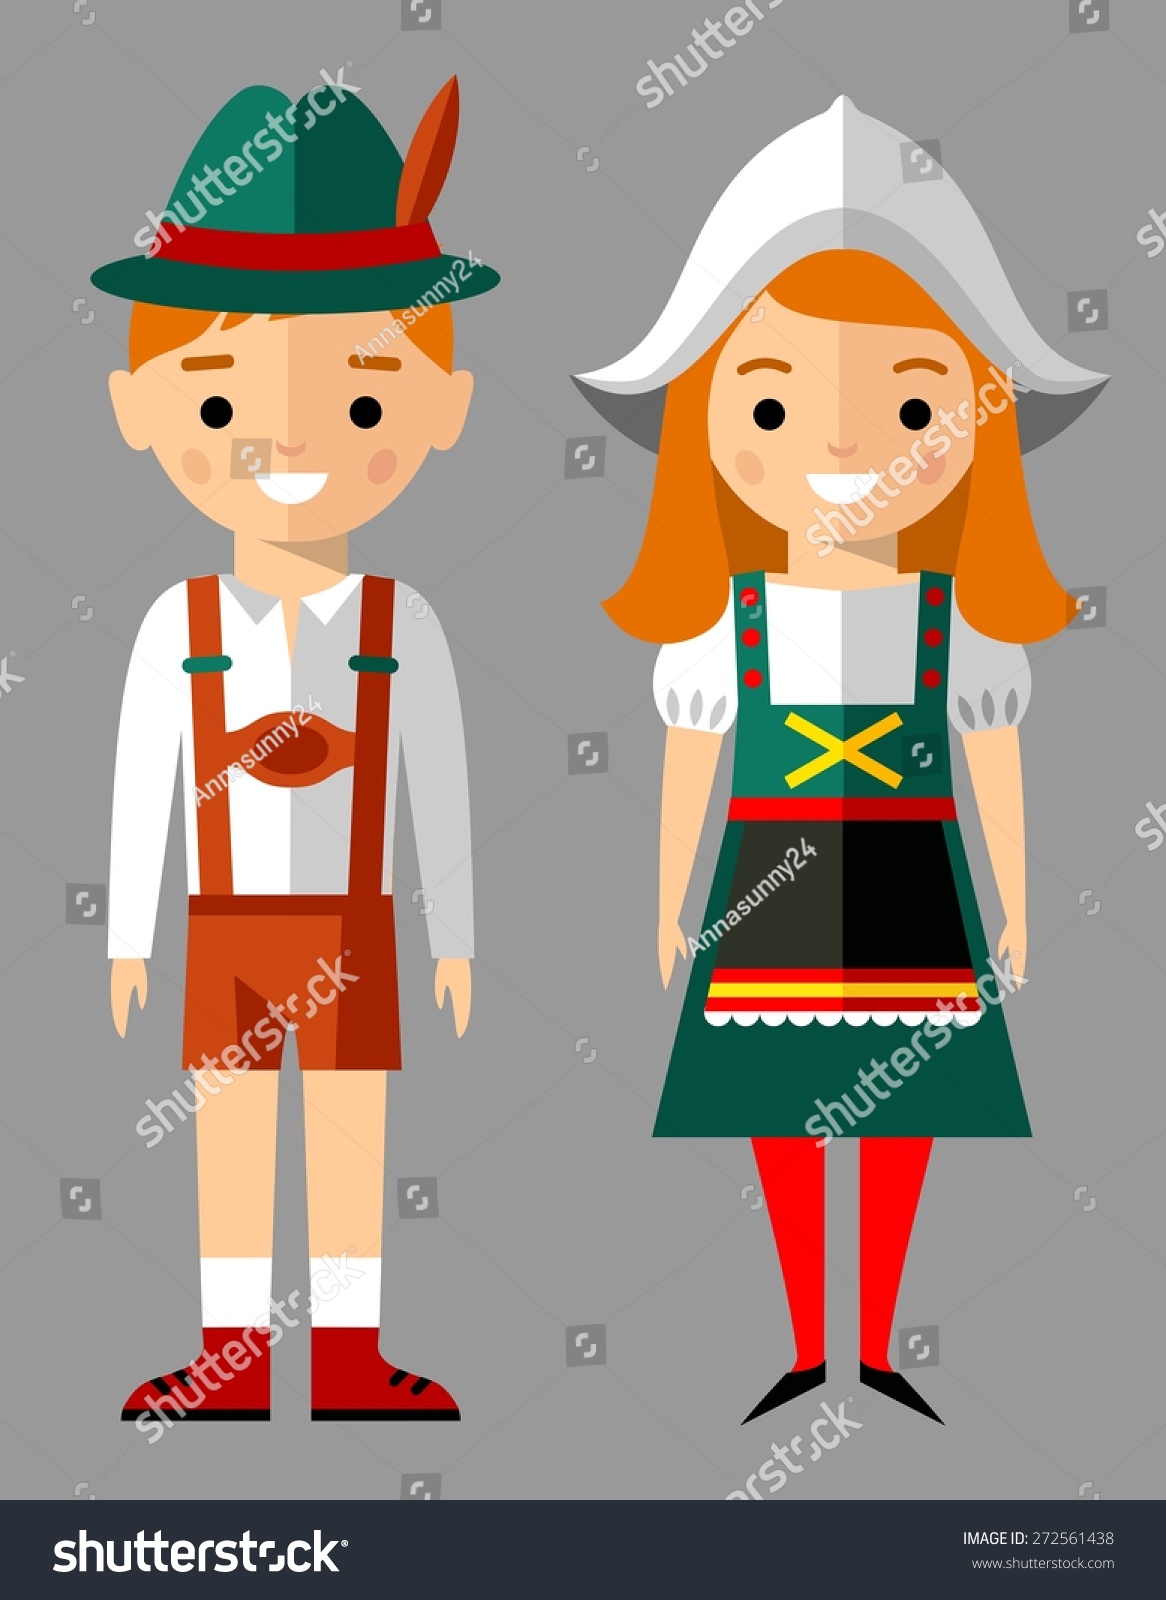 ドイツ人の子ども 男の子 女の子 ドイツ人の女性と国の衣装を着た男性のベクターイラスト のベクター画像素材 ロイヤリティフリー